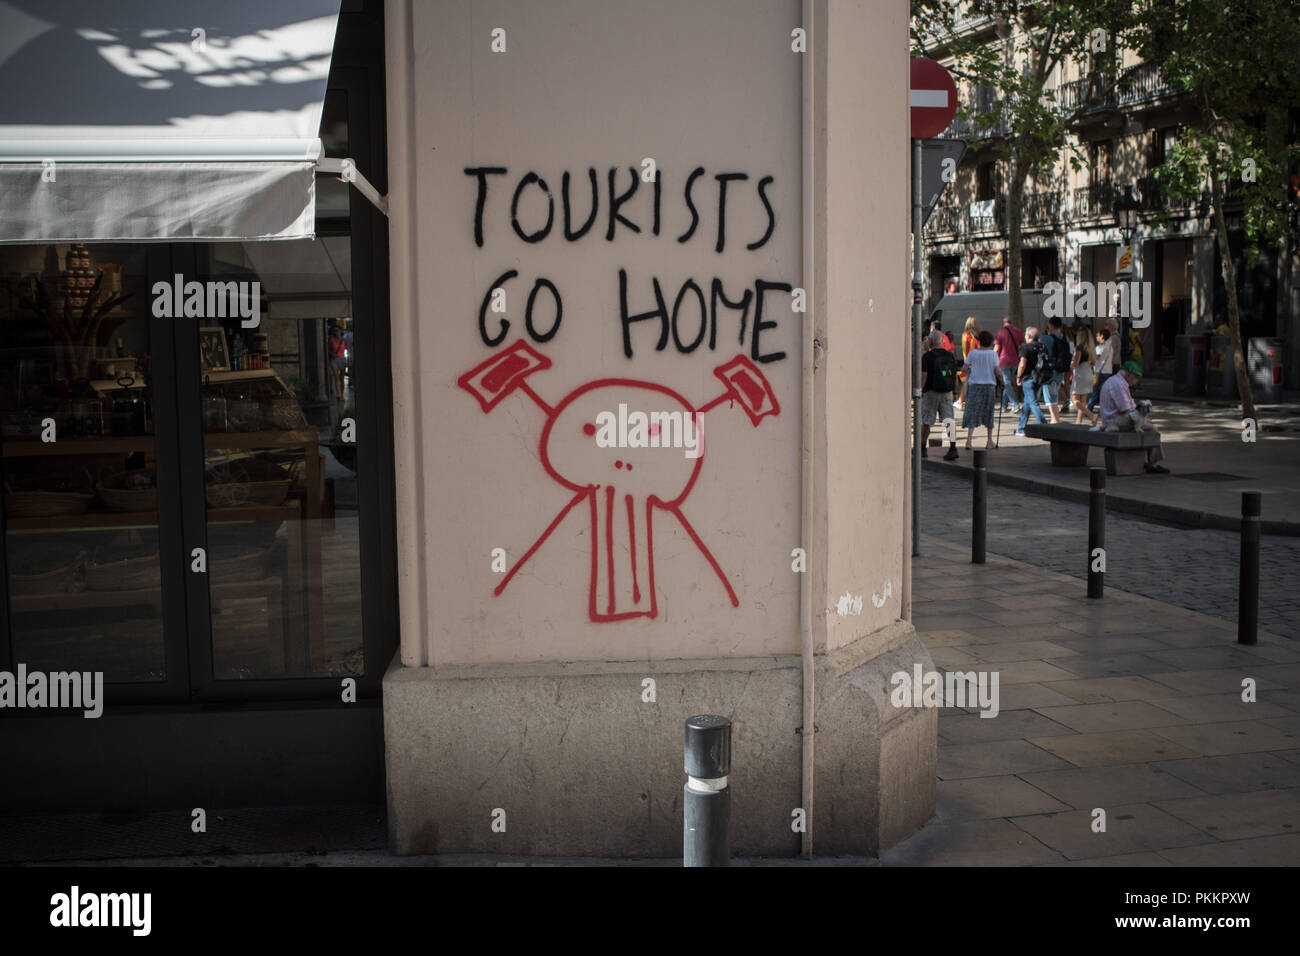 Le graffiti contre le tourisme de masse dans les rues de Barcelone, Espagne Banque D'Images